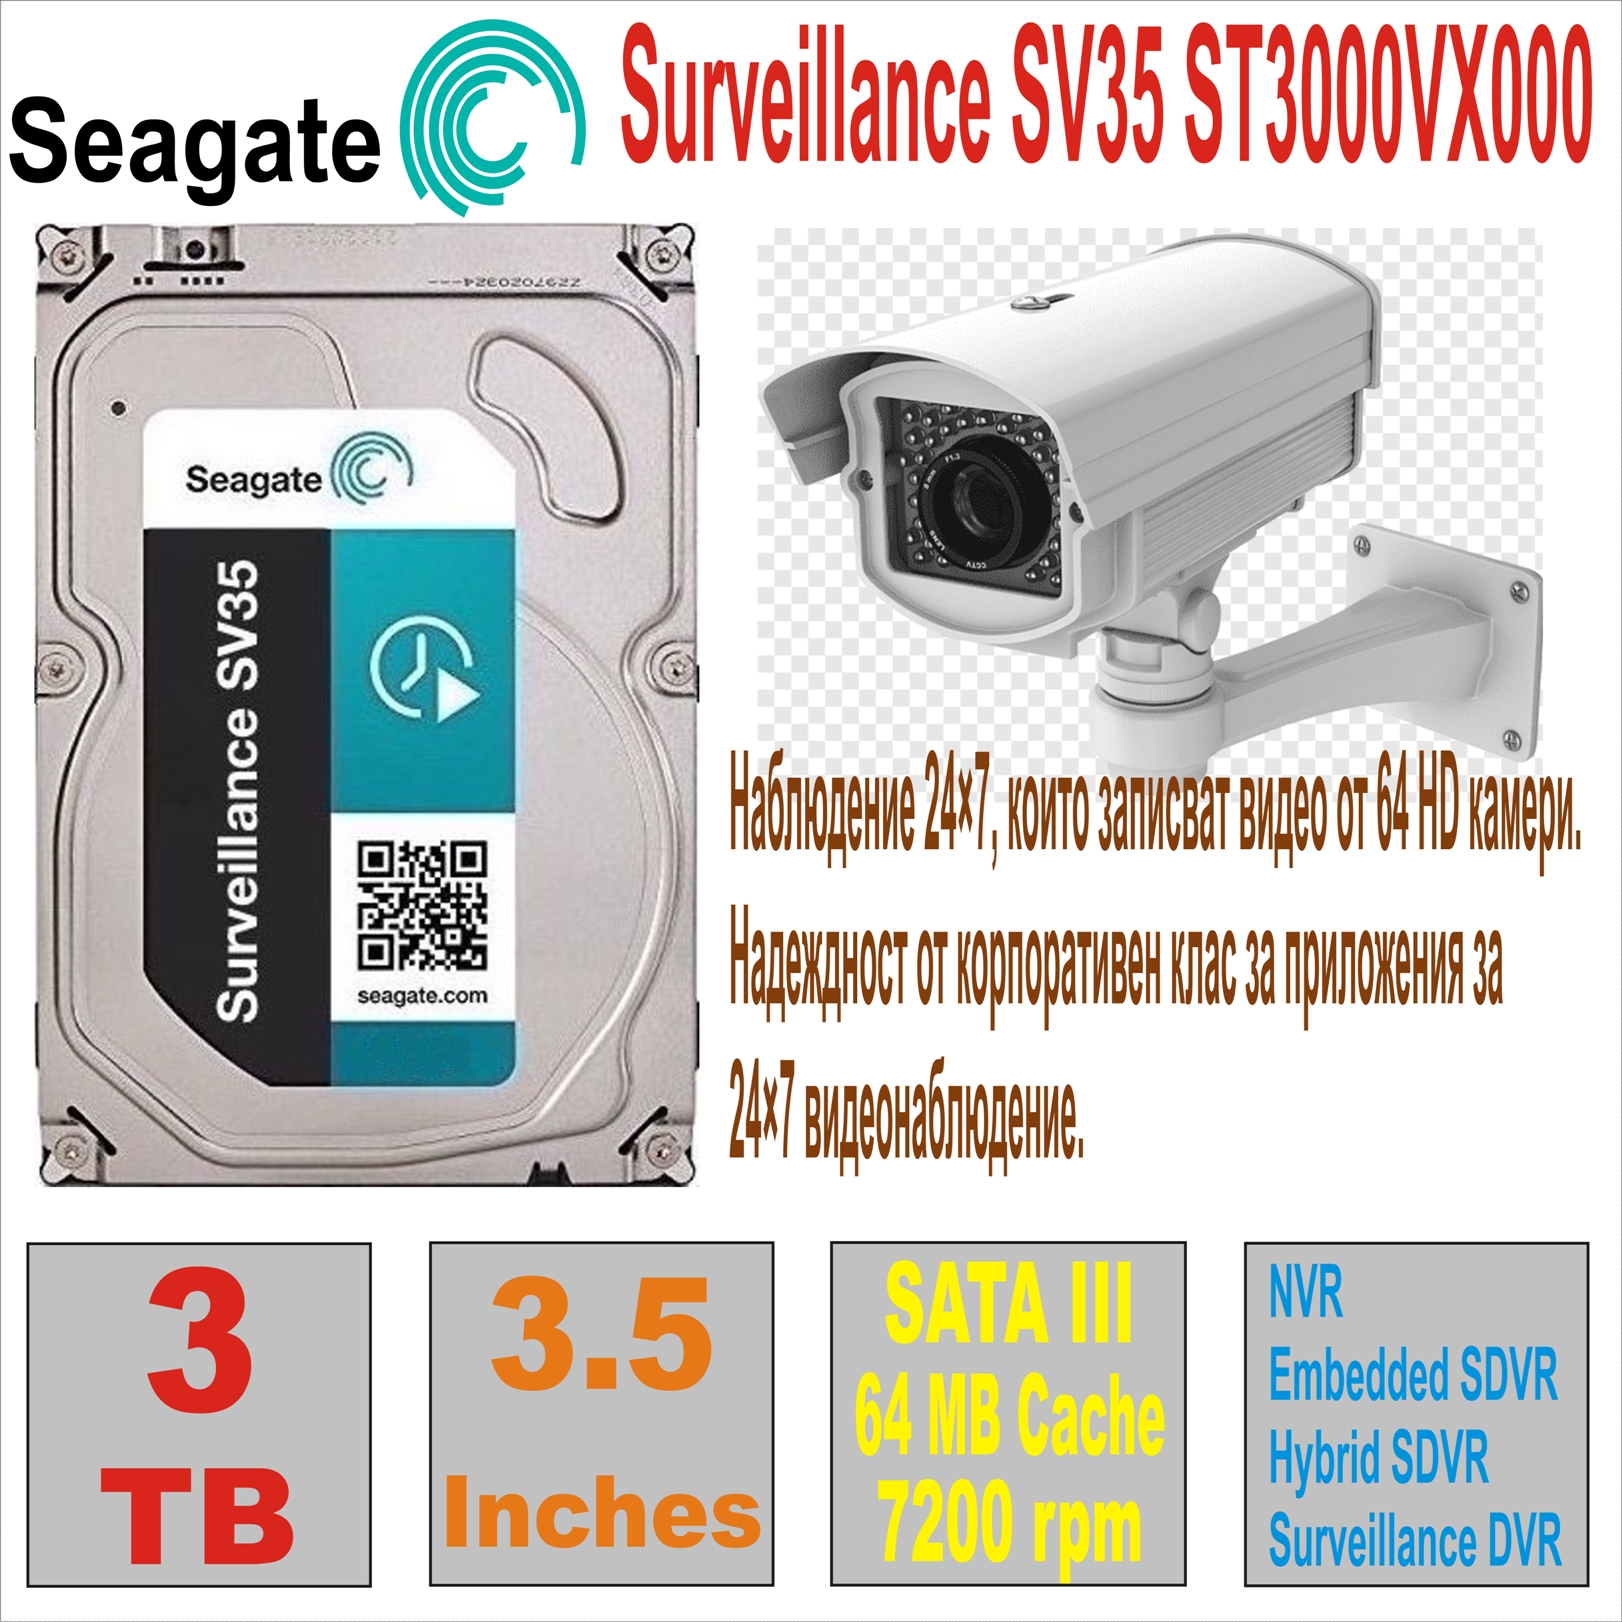 HDD 3.5` 3 TB SEAGATE SV35 ST3000VX000